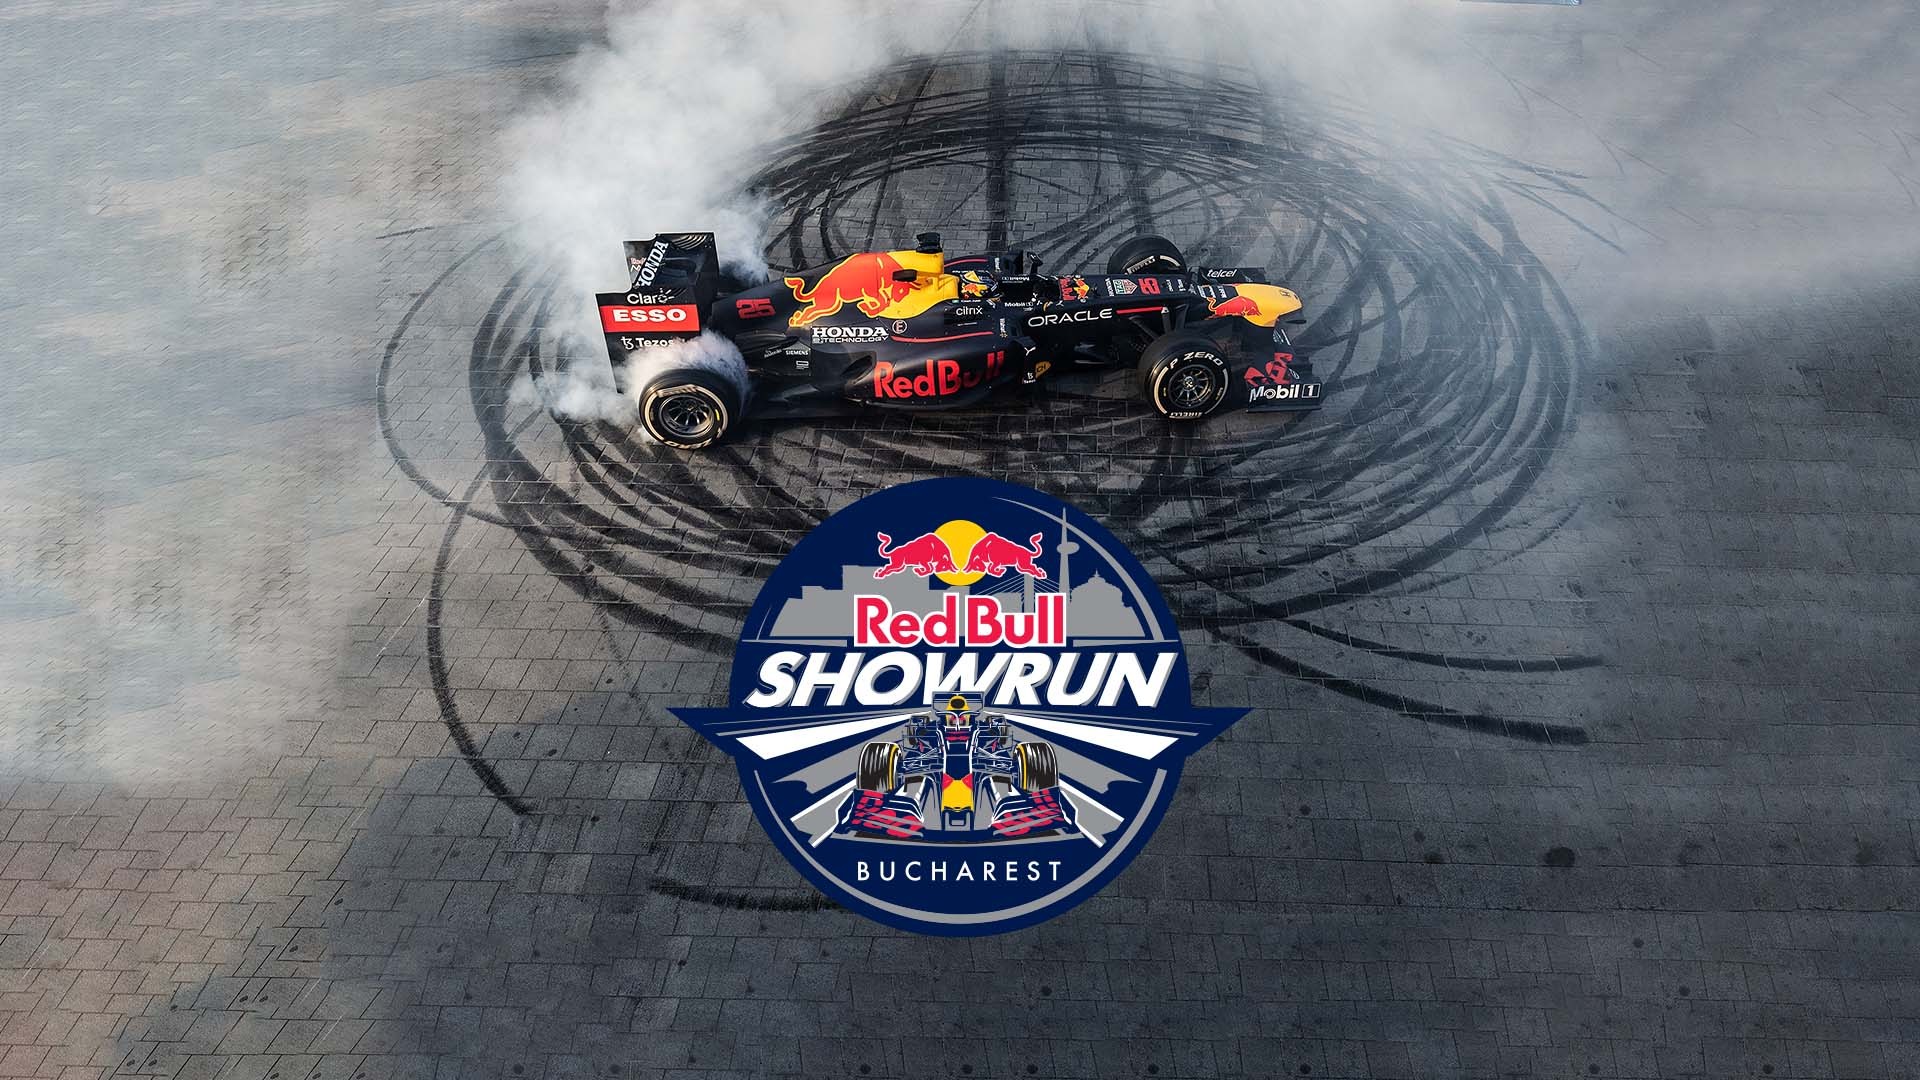 Red Bull Showrun